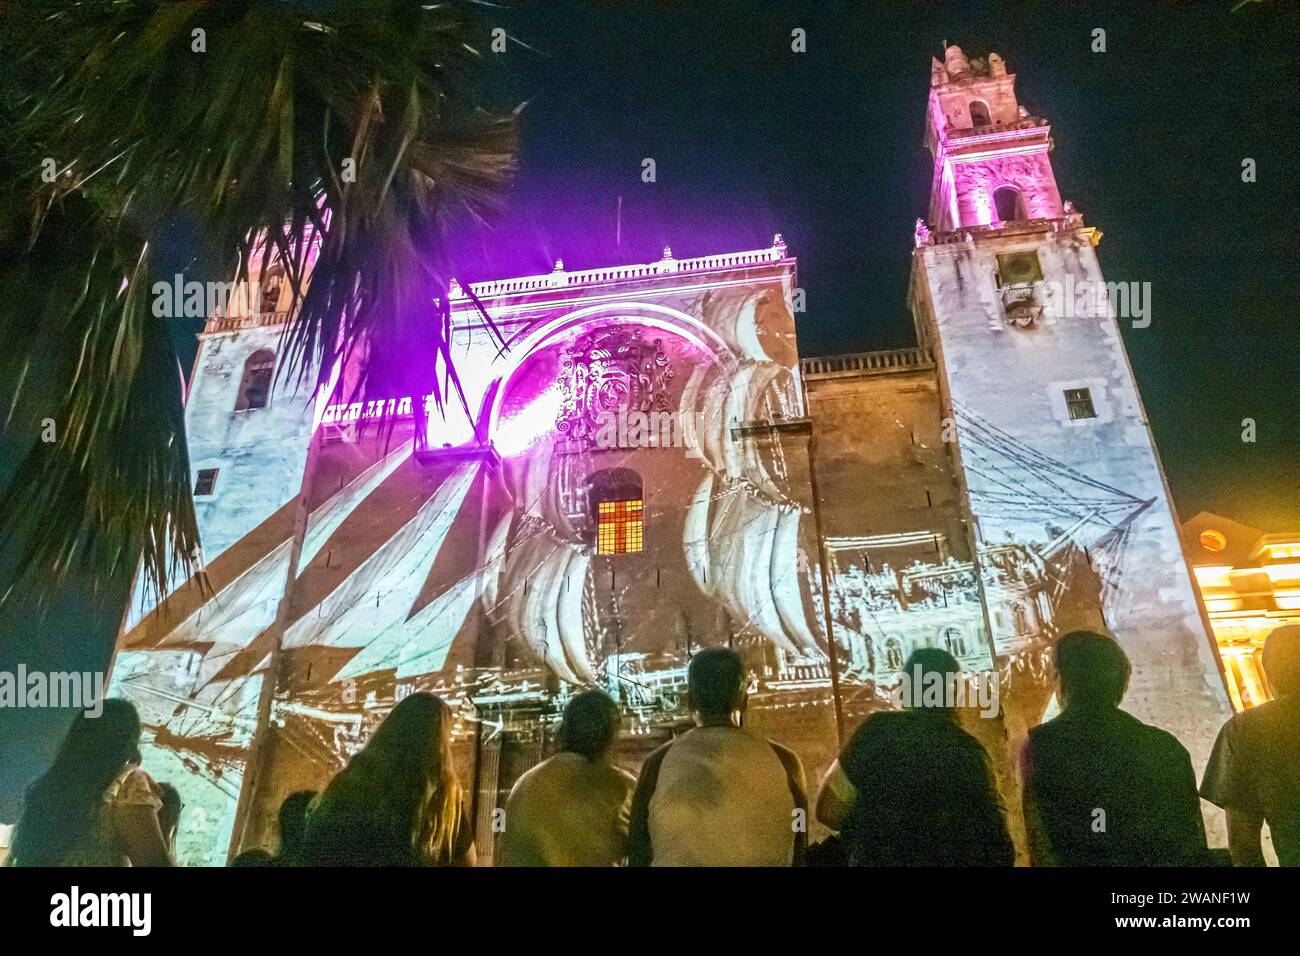 Merida Mexico, centro storico, spettacolo di suoni luminosi, pietre sacre Piedras Sagradas, superficie dell'edificio proiettata, Catedral de Merida Foto Stock